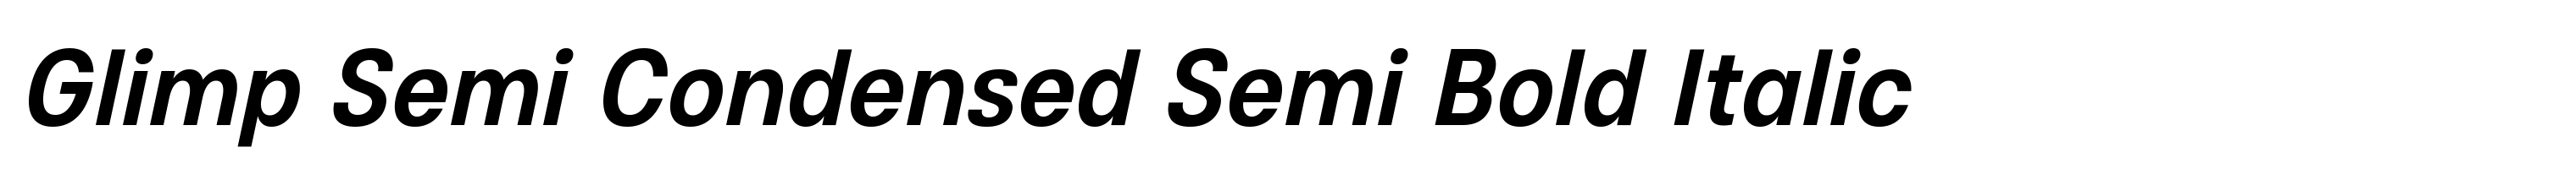 Glimp Semi Condensed Semi Bold Italic